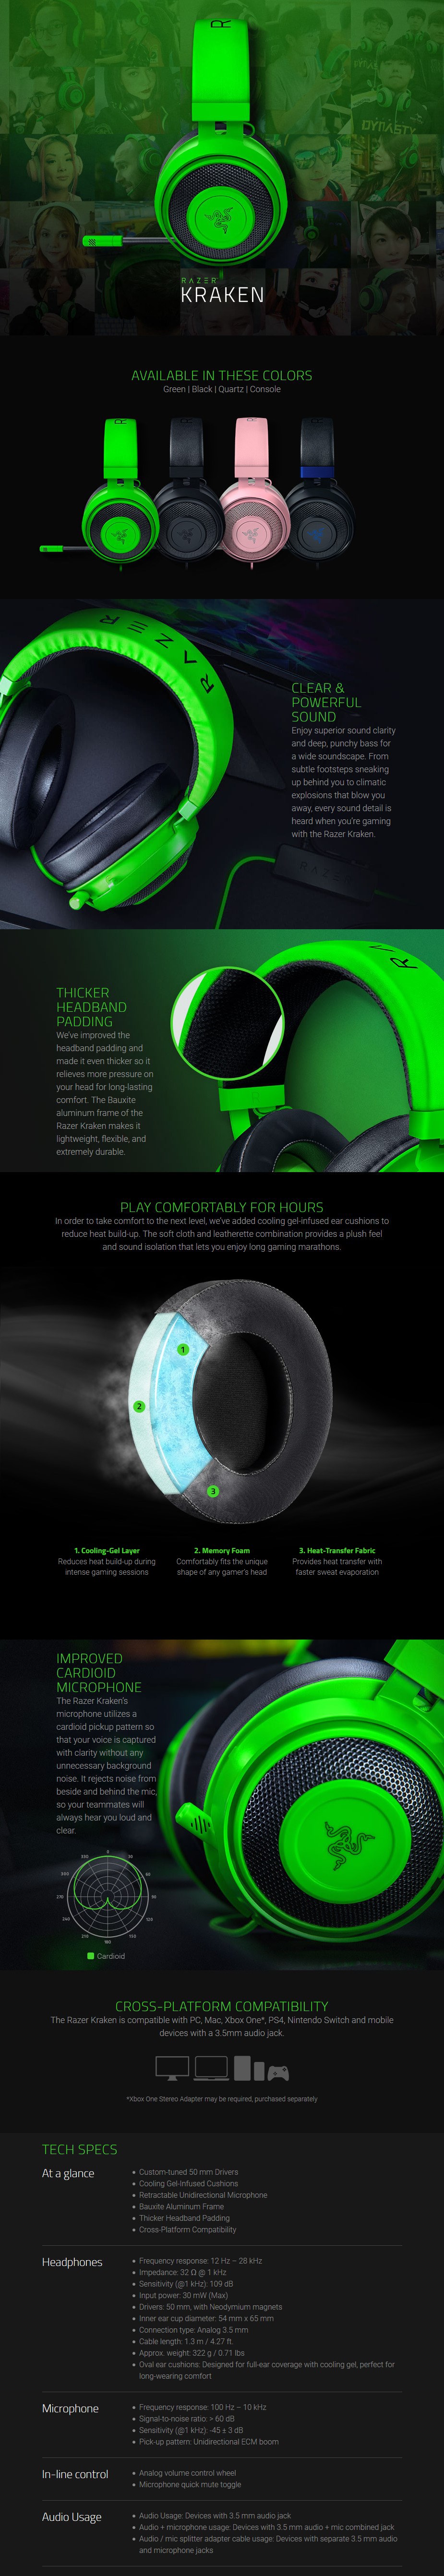 Razer Kraken Multi-platform Wired Gaming Headset - Quartz - Overview 1